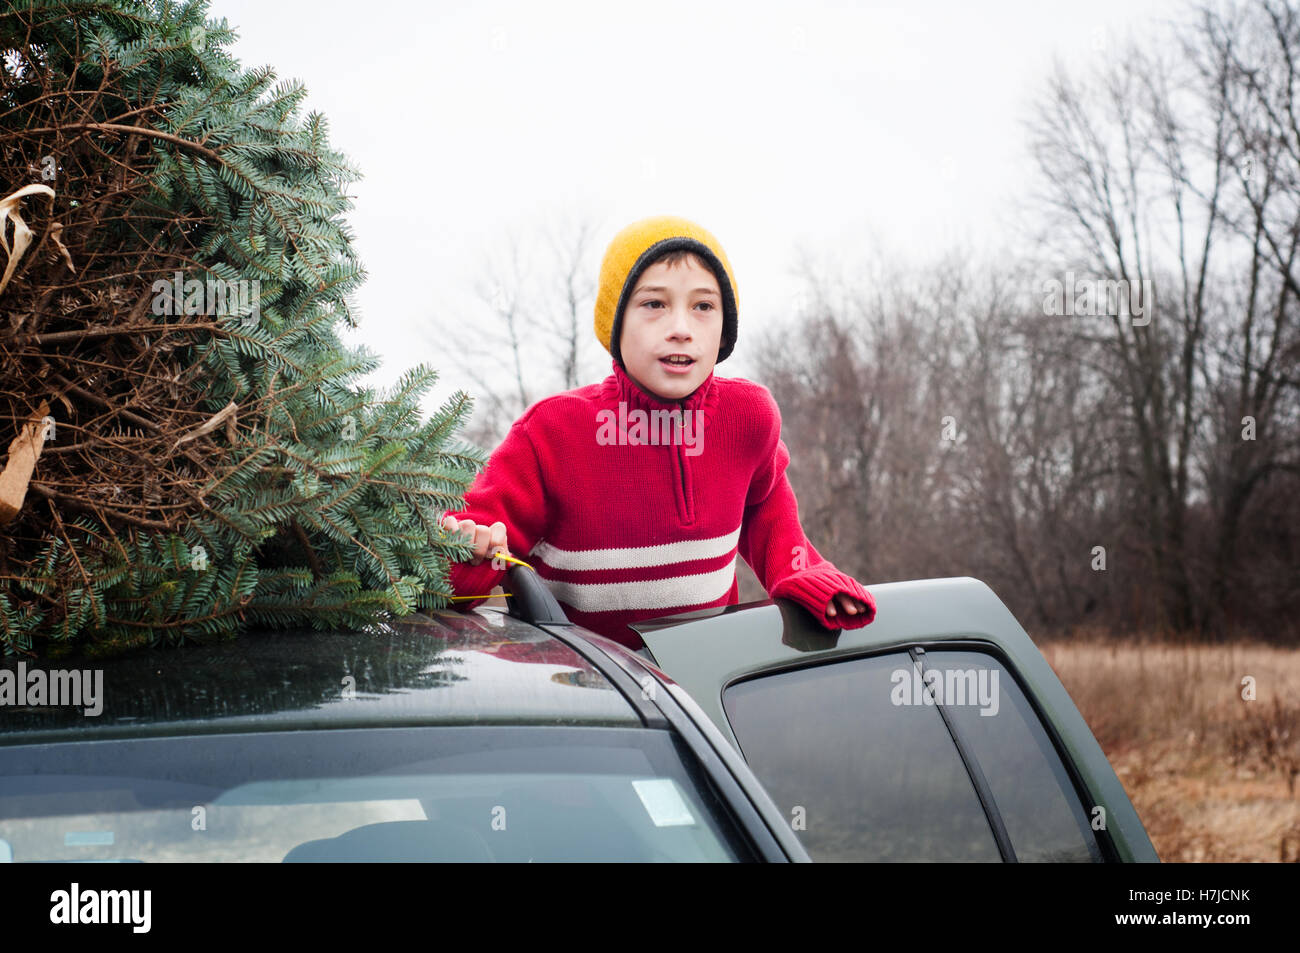 Garçon avec un arbre de Noël frais sur le toit d'une voiture Banque D'Images